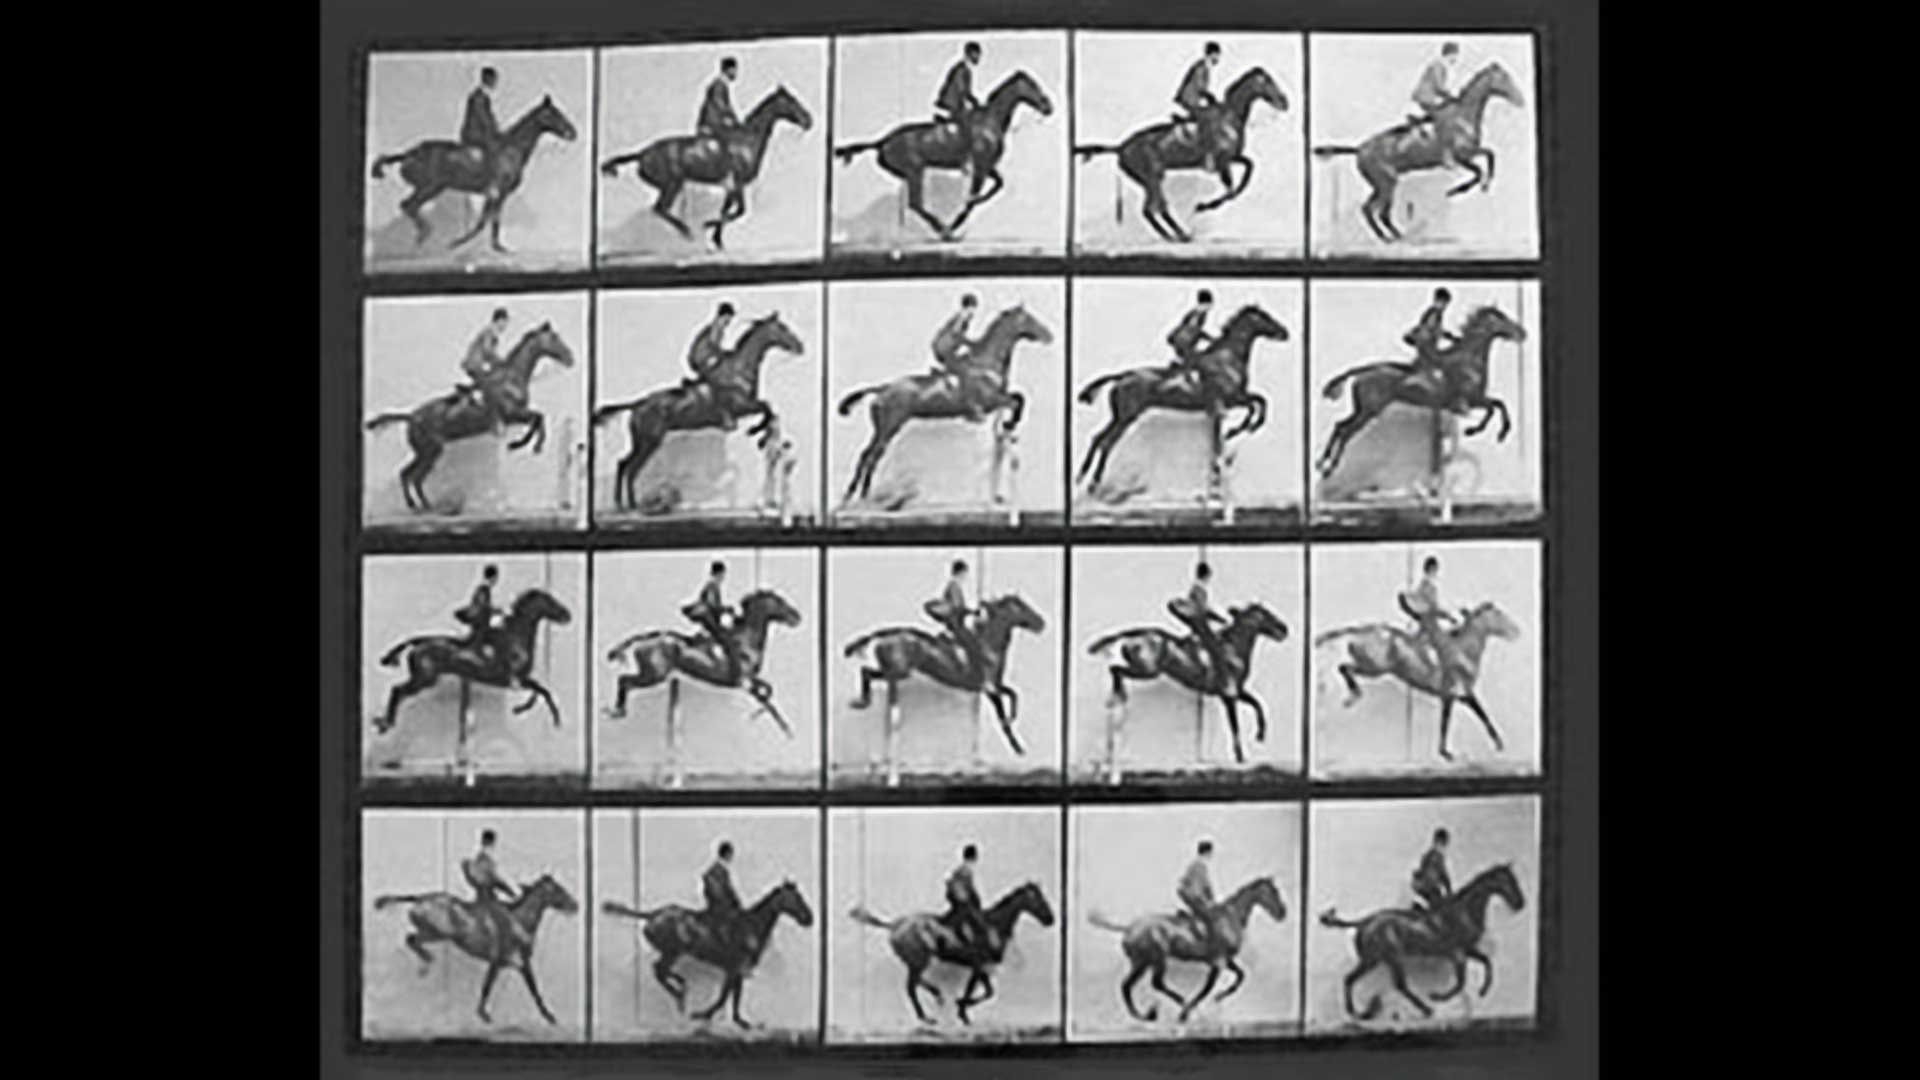 The Horse in Motion - Eadweard Muybridge